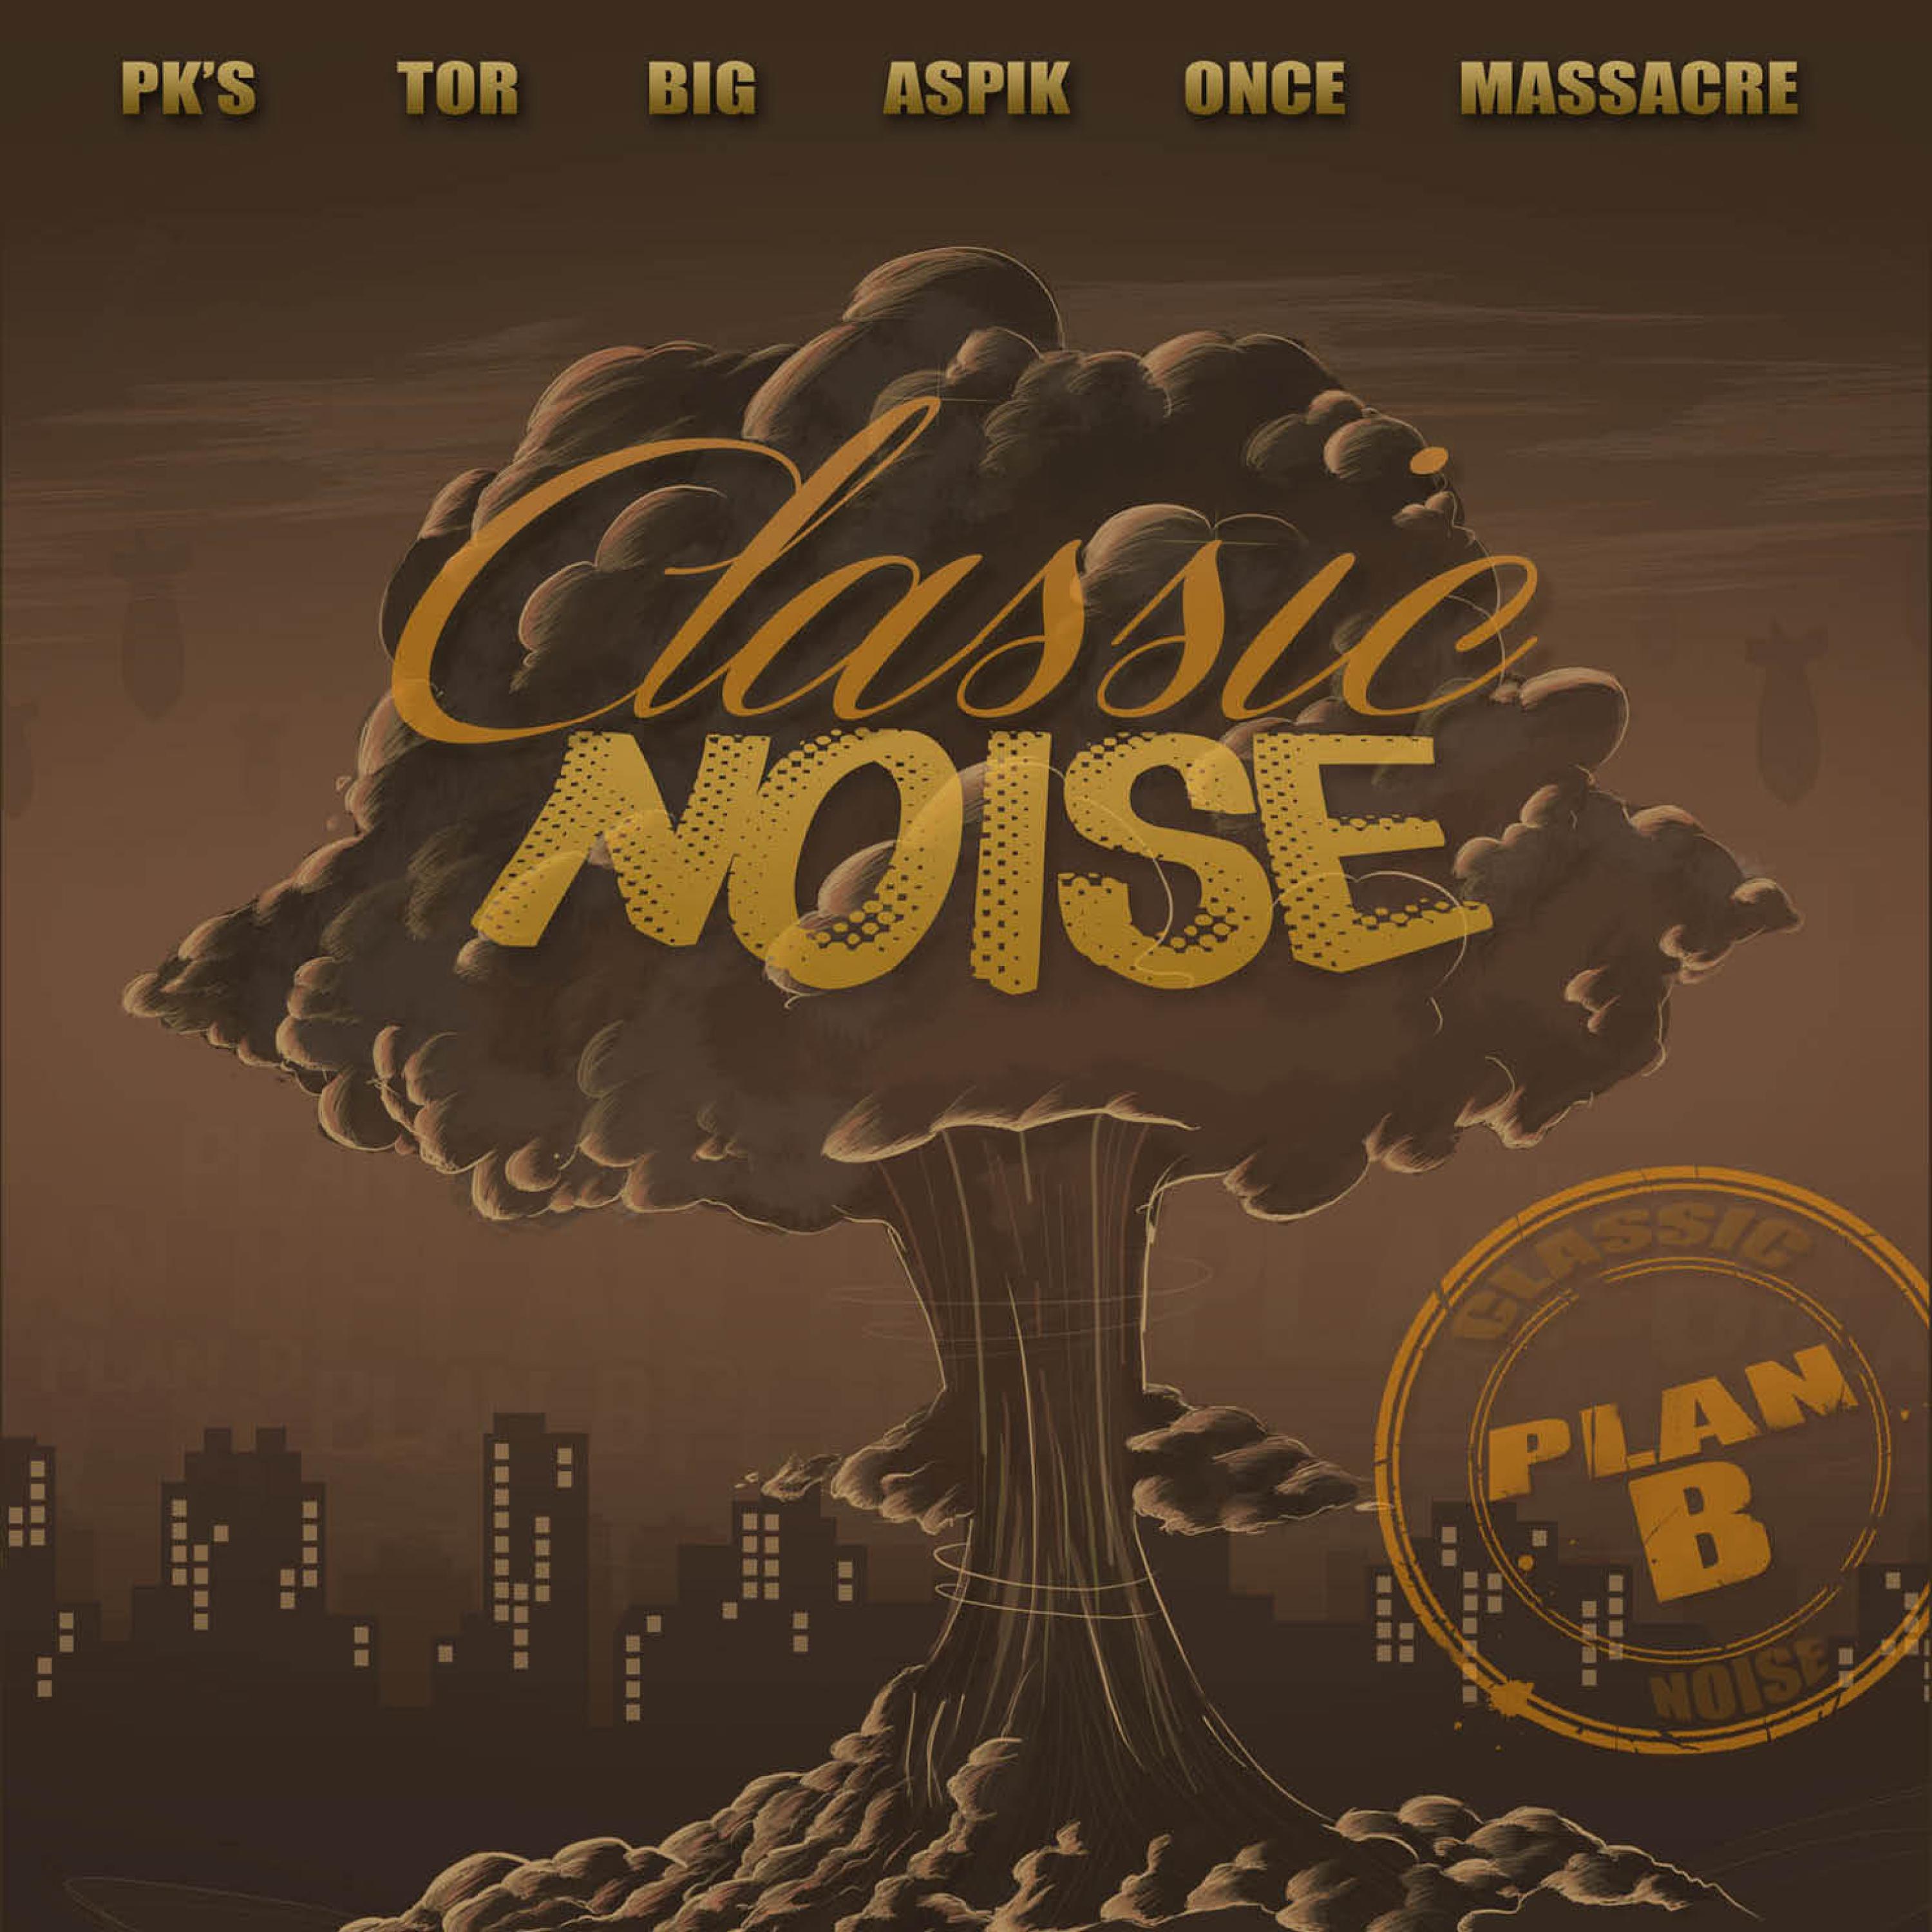 Classic Noise - Vamos a matar